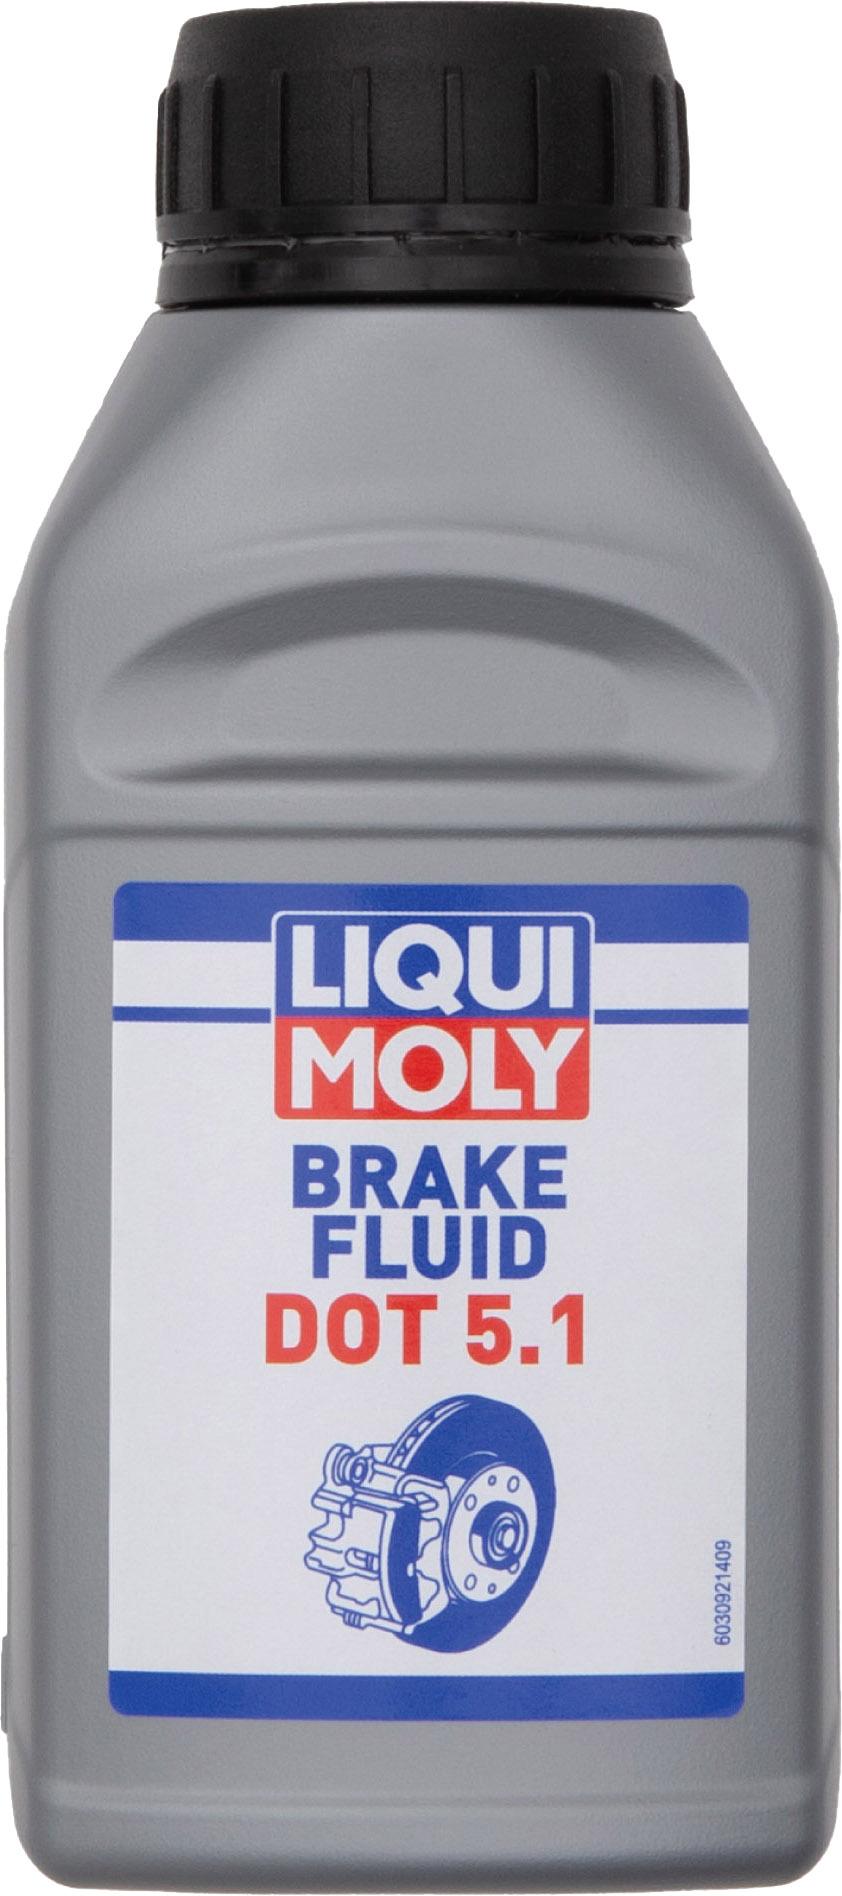 Image of Bleed Kit Liqui Moly DOT 5.1 Brake Fluid (250ml) - DOT Based Brakes